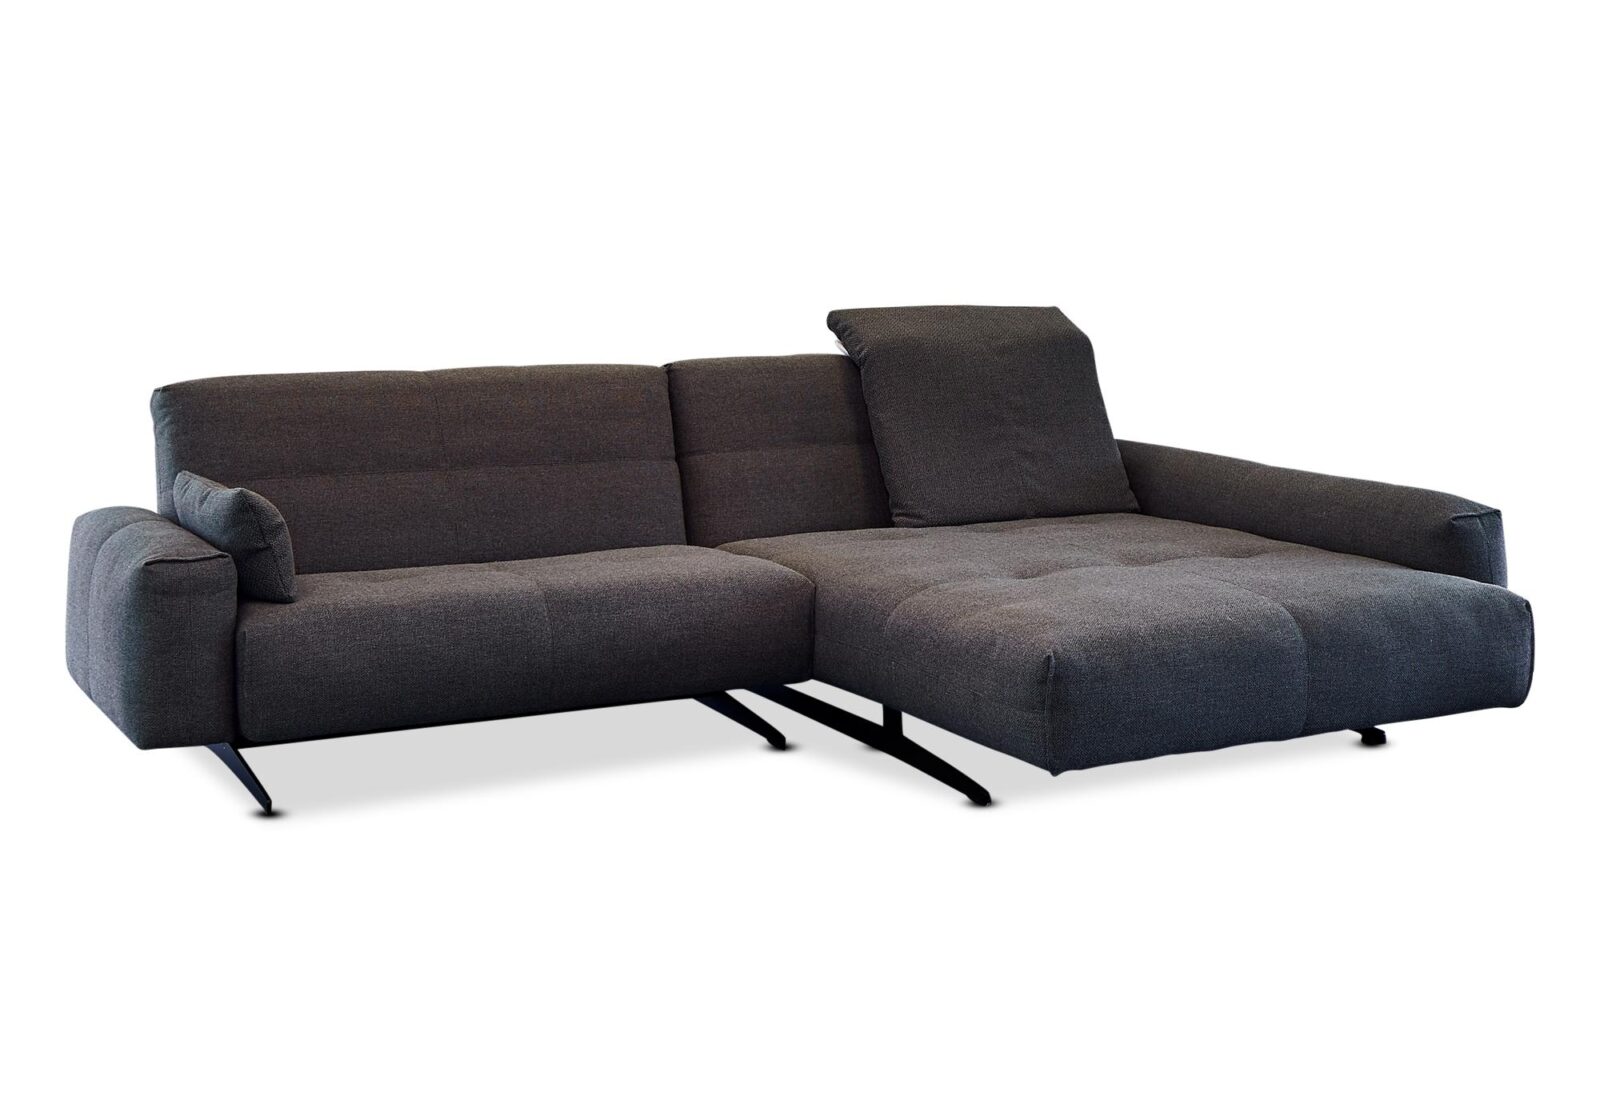 Sofa B50 Rolf Benz mit Longchair. Bezug: Stoff. Farbe: Anthrazitgrau. Erhältlich bei Möbel Gallati.